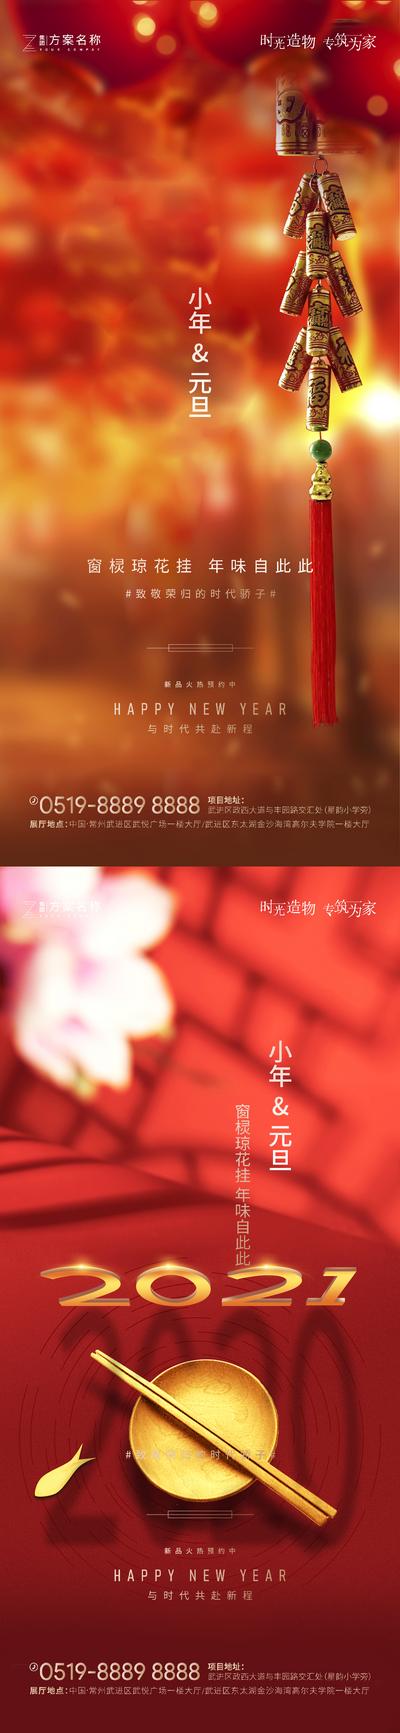 南门网 海报 公历节日 中国传统节日  元旦 小年 红色 鞭炮 系列